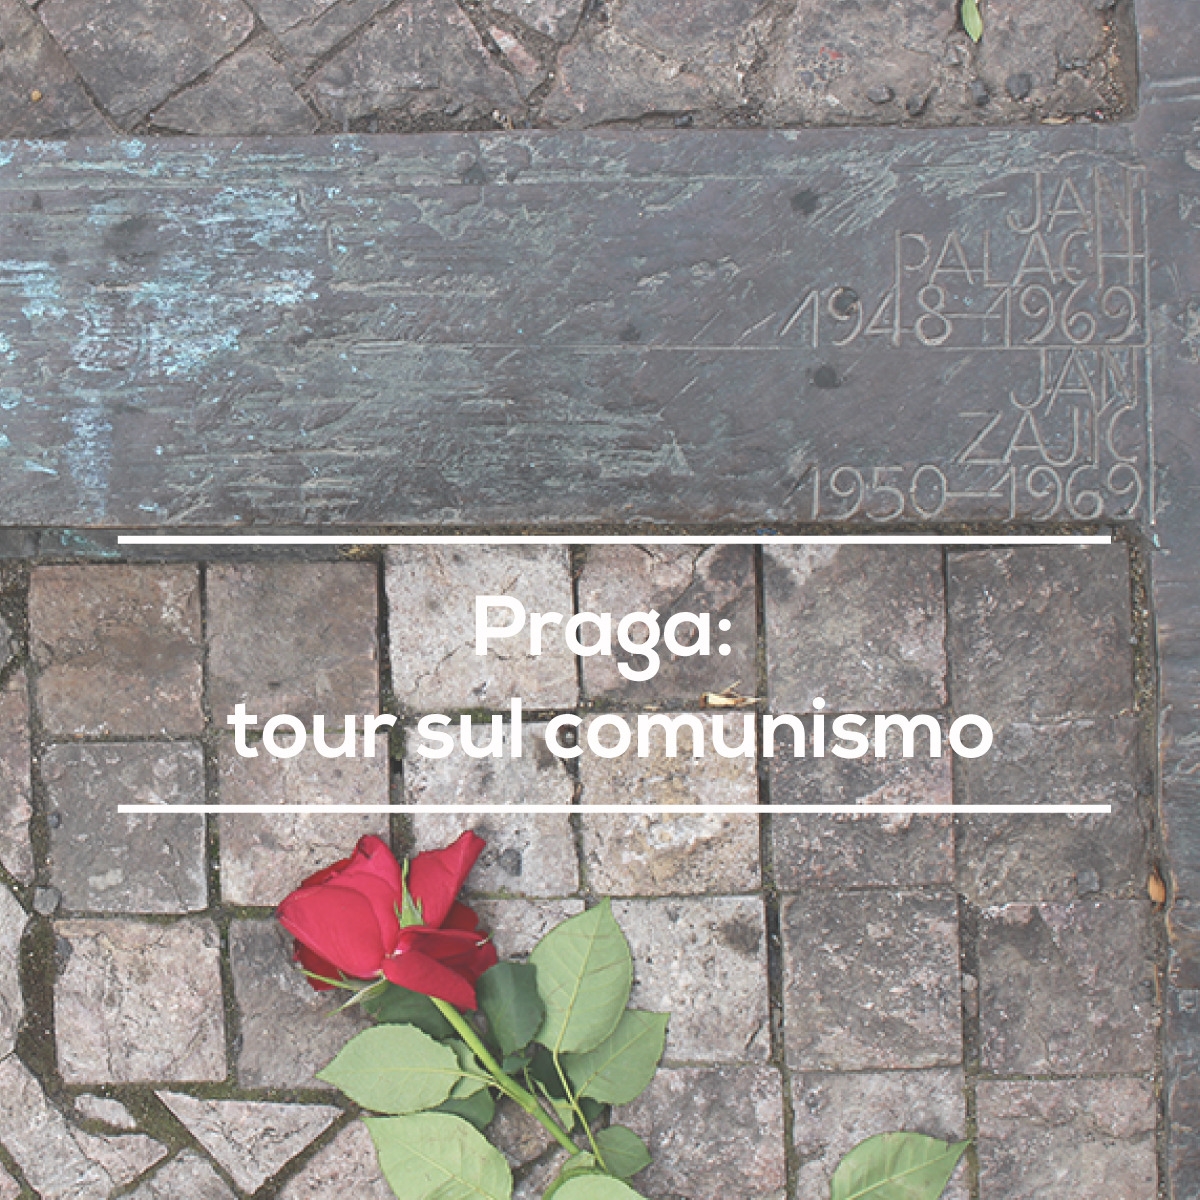 tour sul comunismo a Praga